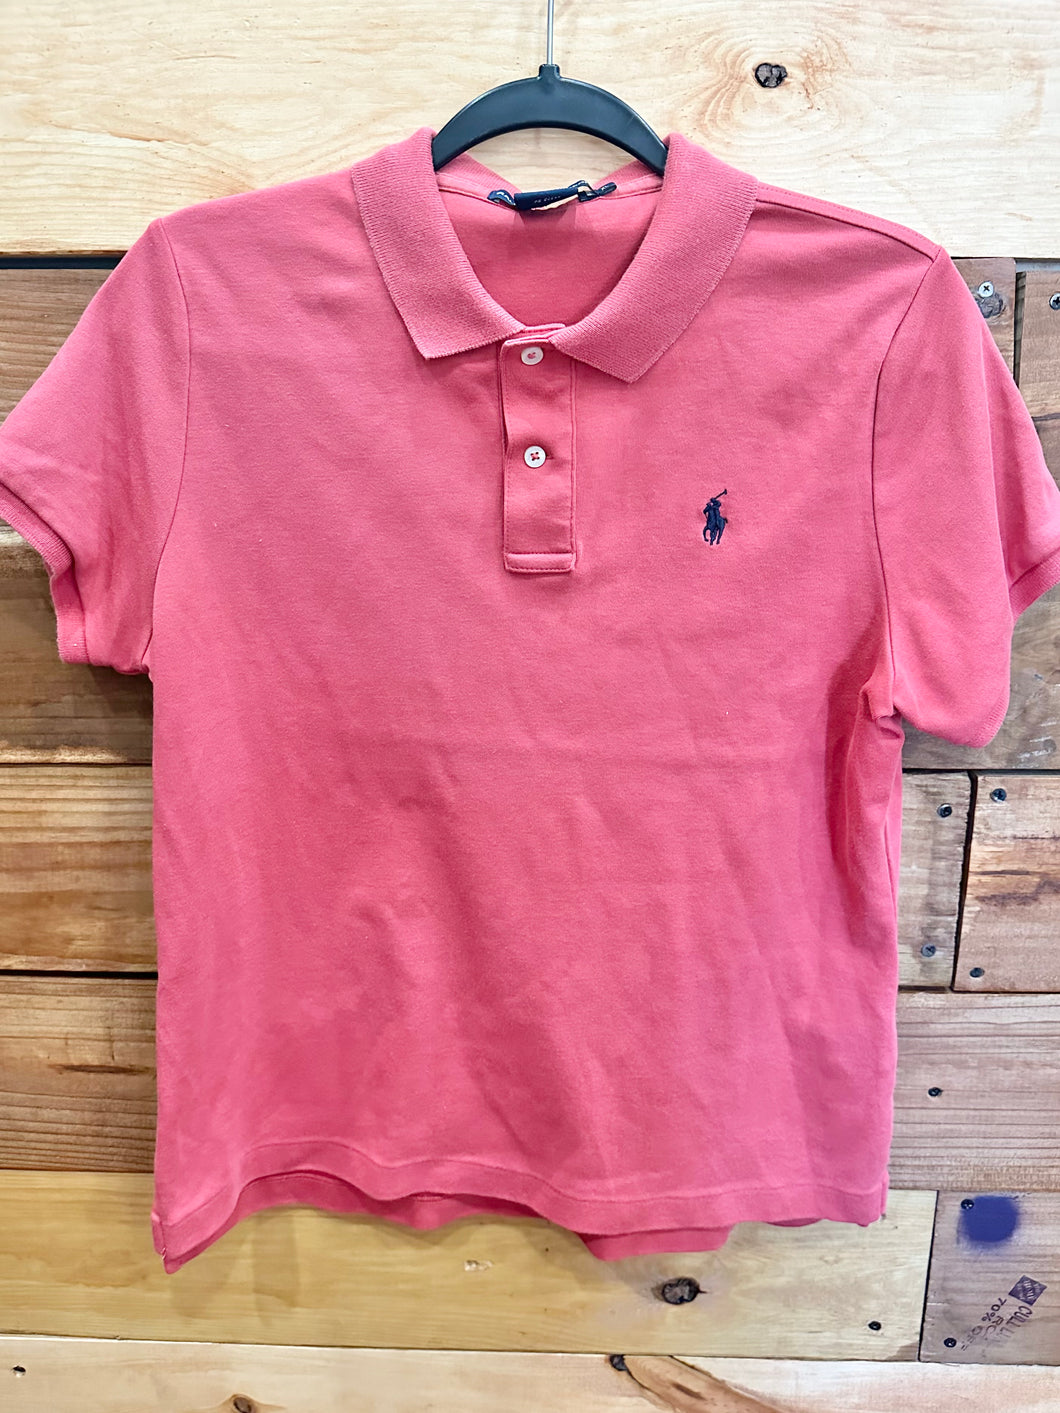 Ralph Lauren Dark Pink Polo Shirt Size 14-16